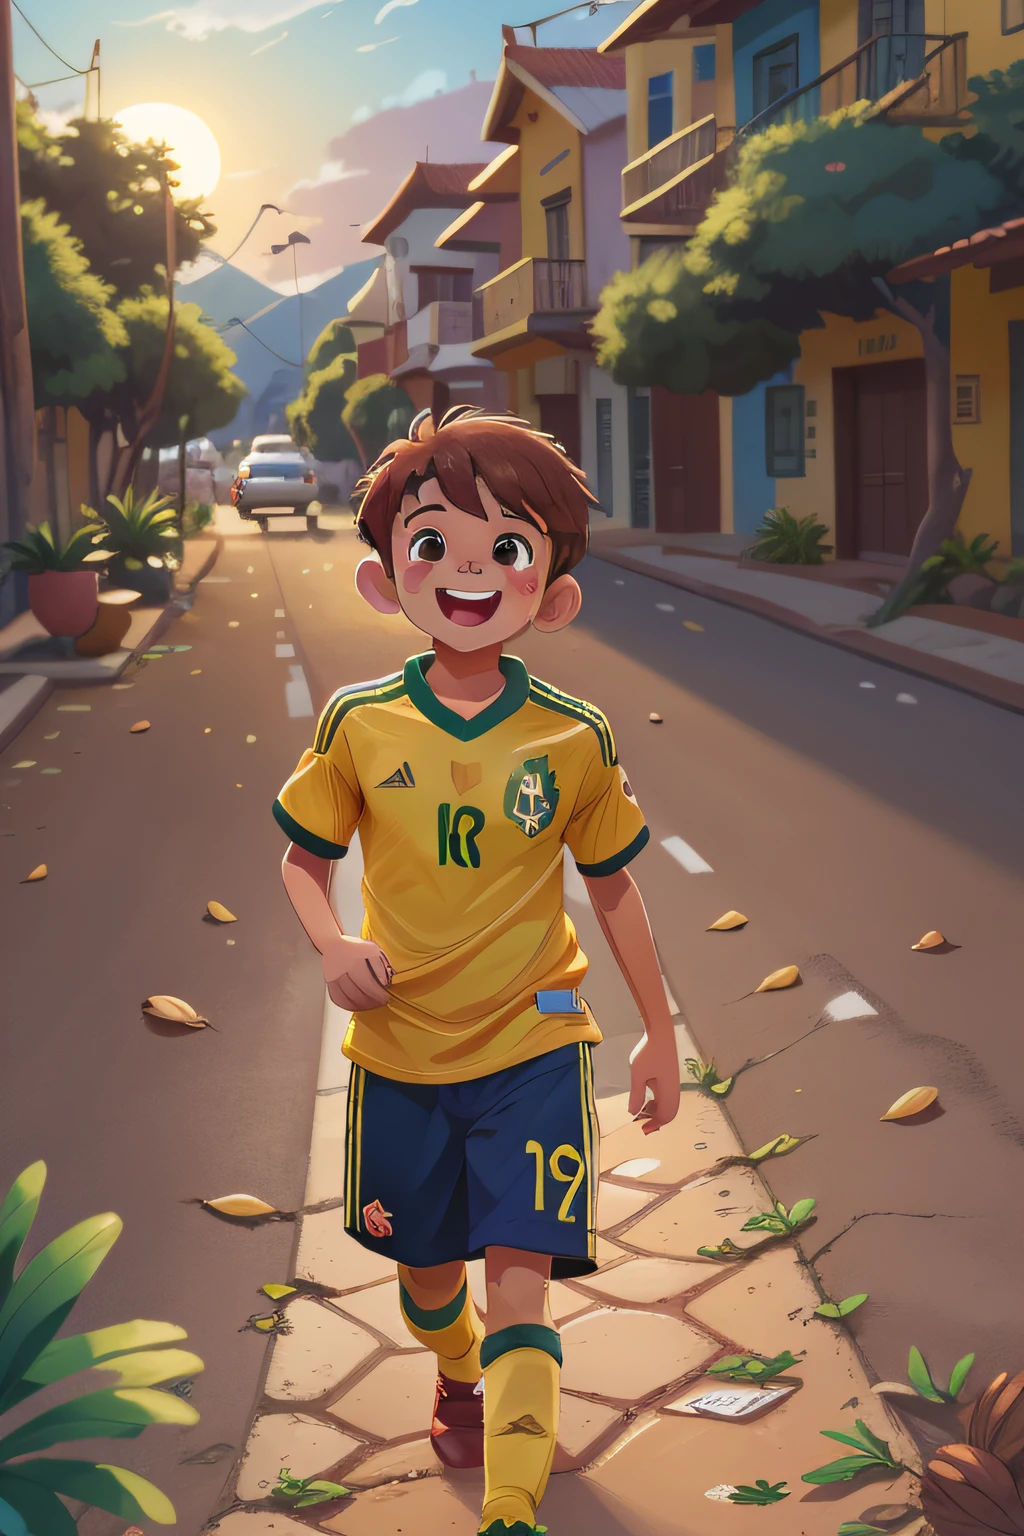 9살 소년, 짧은 머리, 삭감, 갈색, olhos 갈색, 브라질 축구 대표의 셔츠, 황색, 해질녘 아름다운 산의 풍경 속을 혼자 걷다, 행복하다, 디즈니 샤넬 스타일, UHD 이미지, 8K, 극단론자.